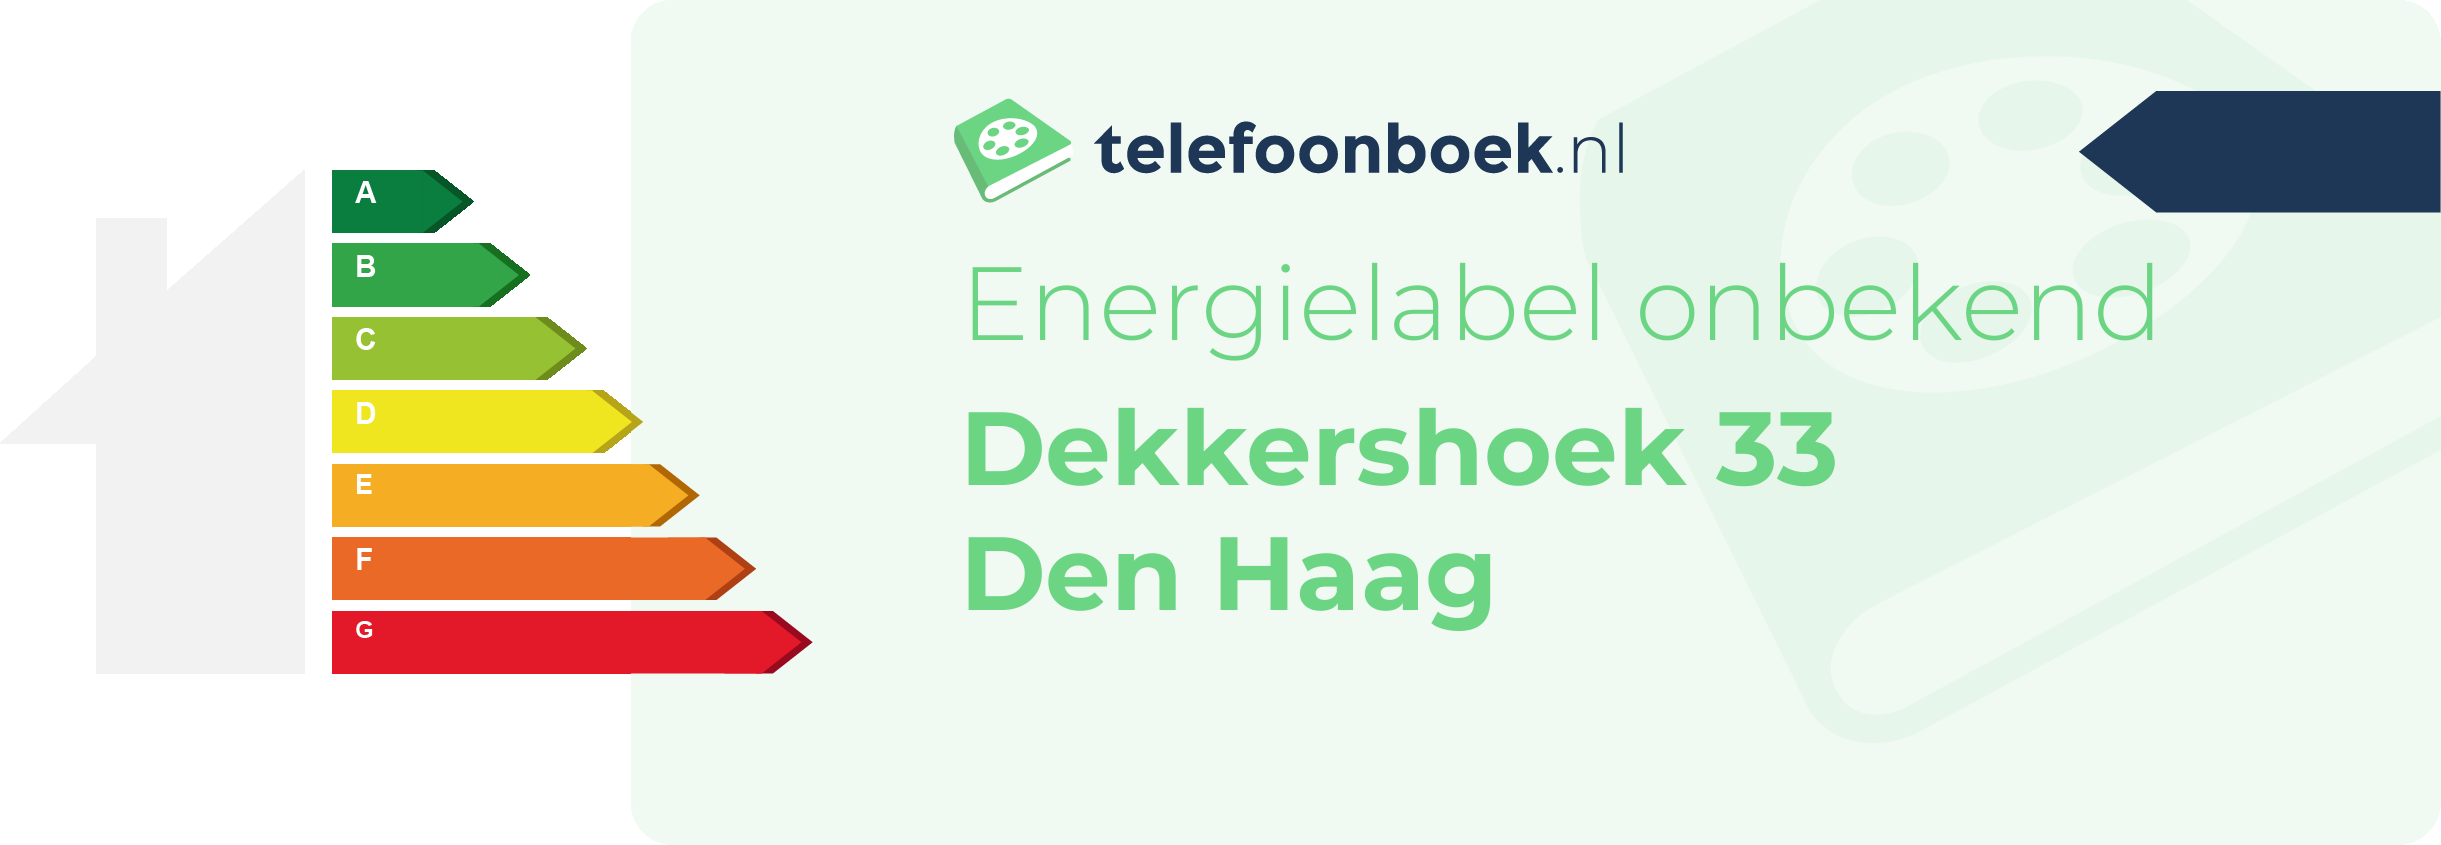 Energielabel Dekkershoek 33 Den Haag